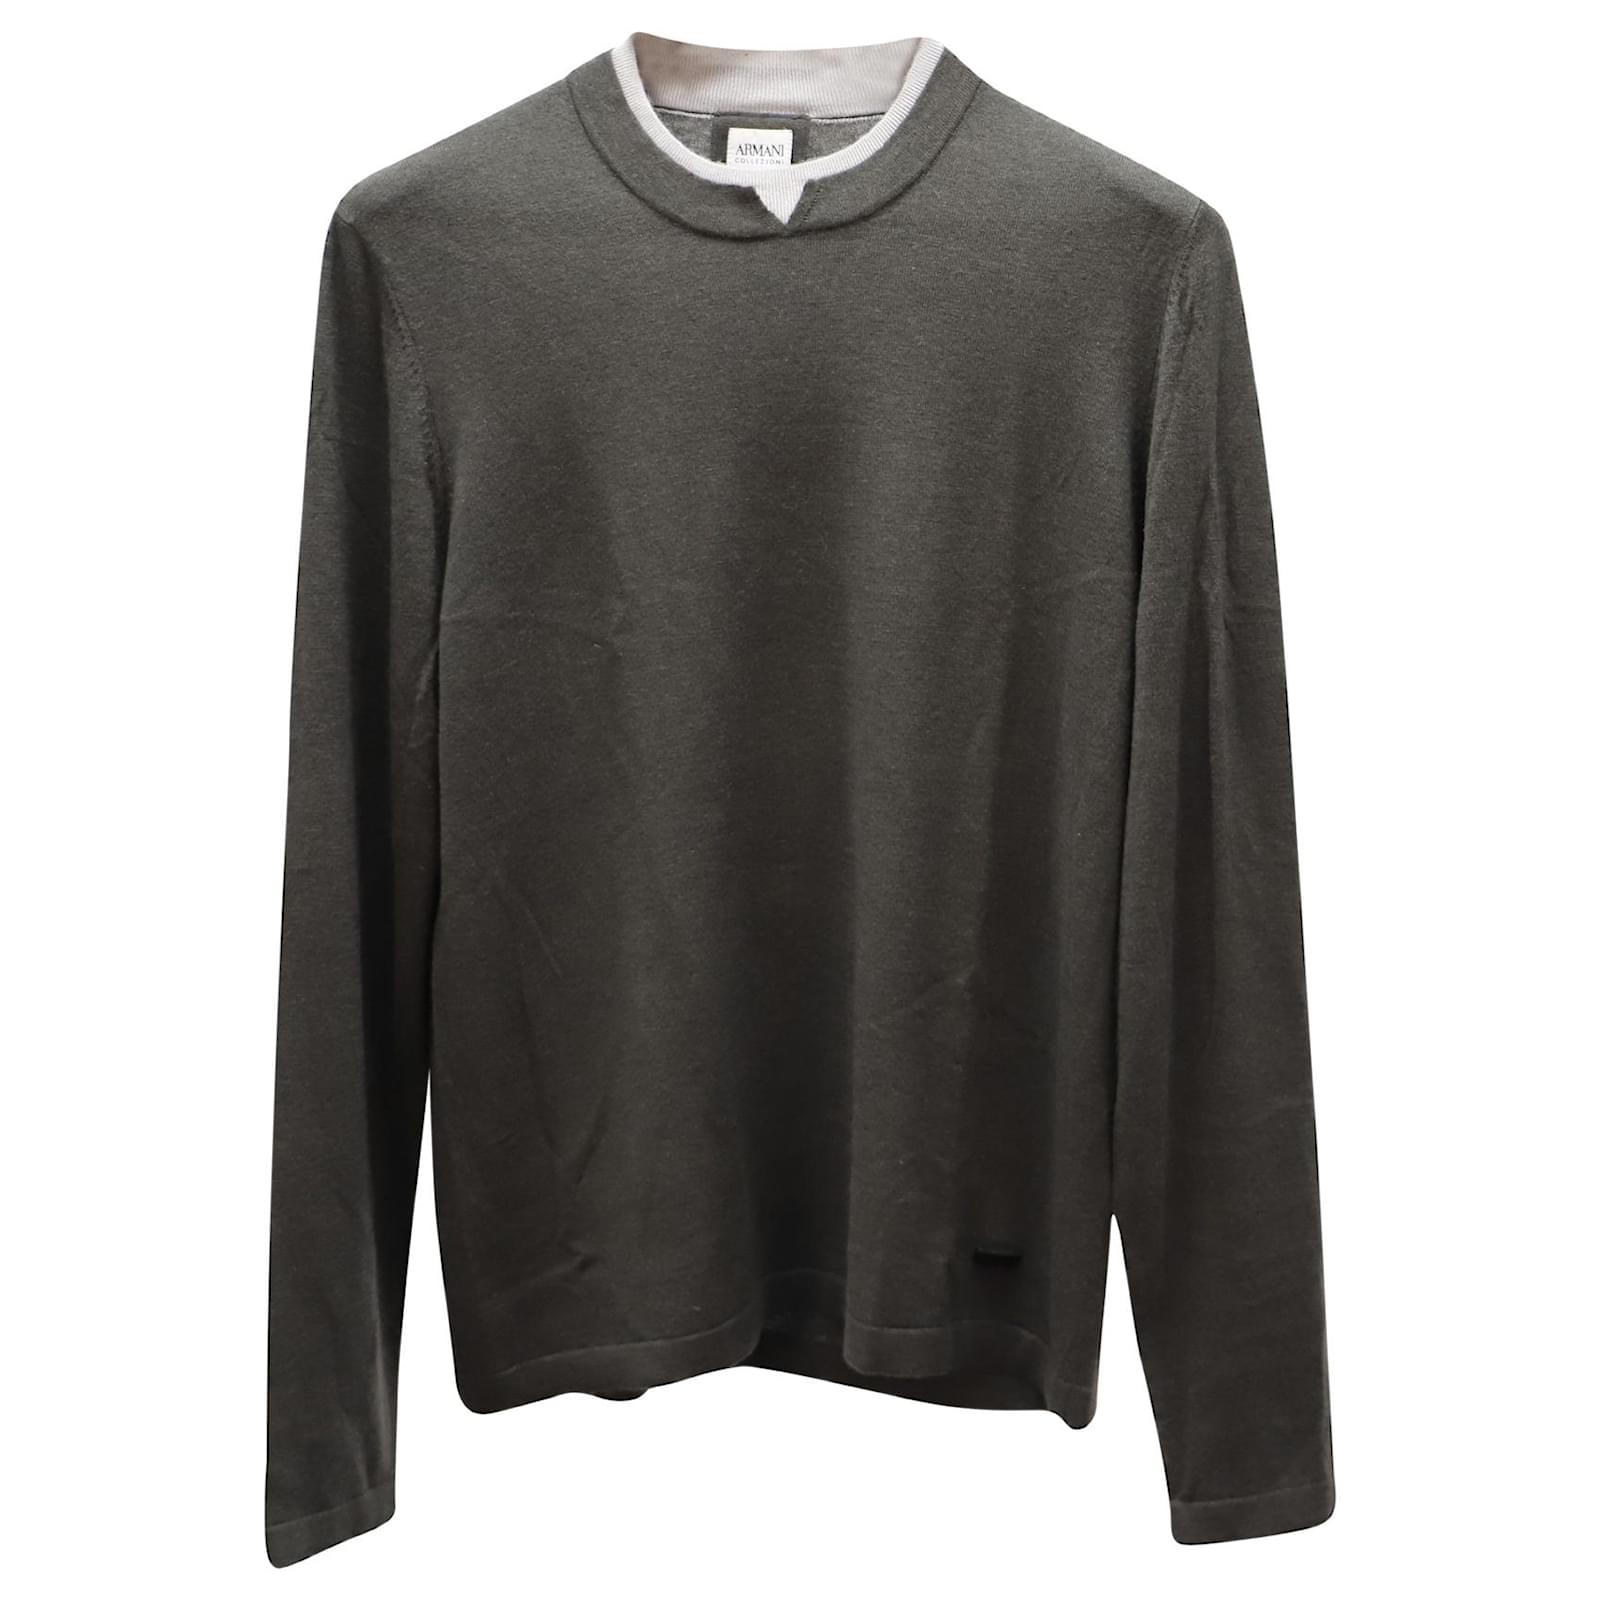 Armani Collezioni Sweater with White Accent Neckline in Gray Cashmere ...